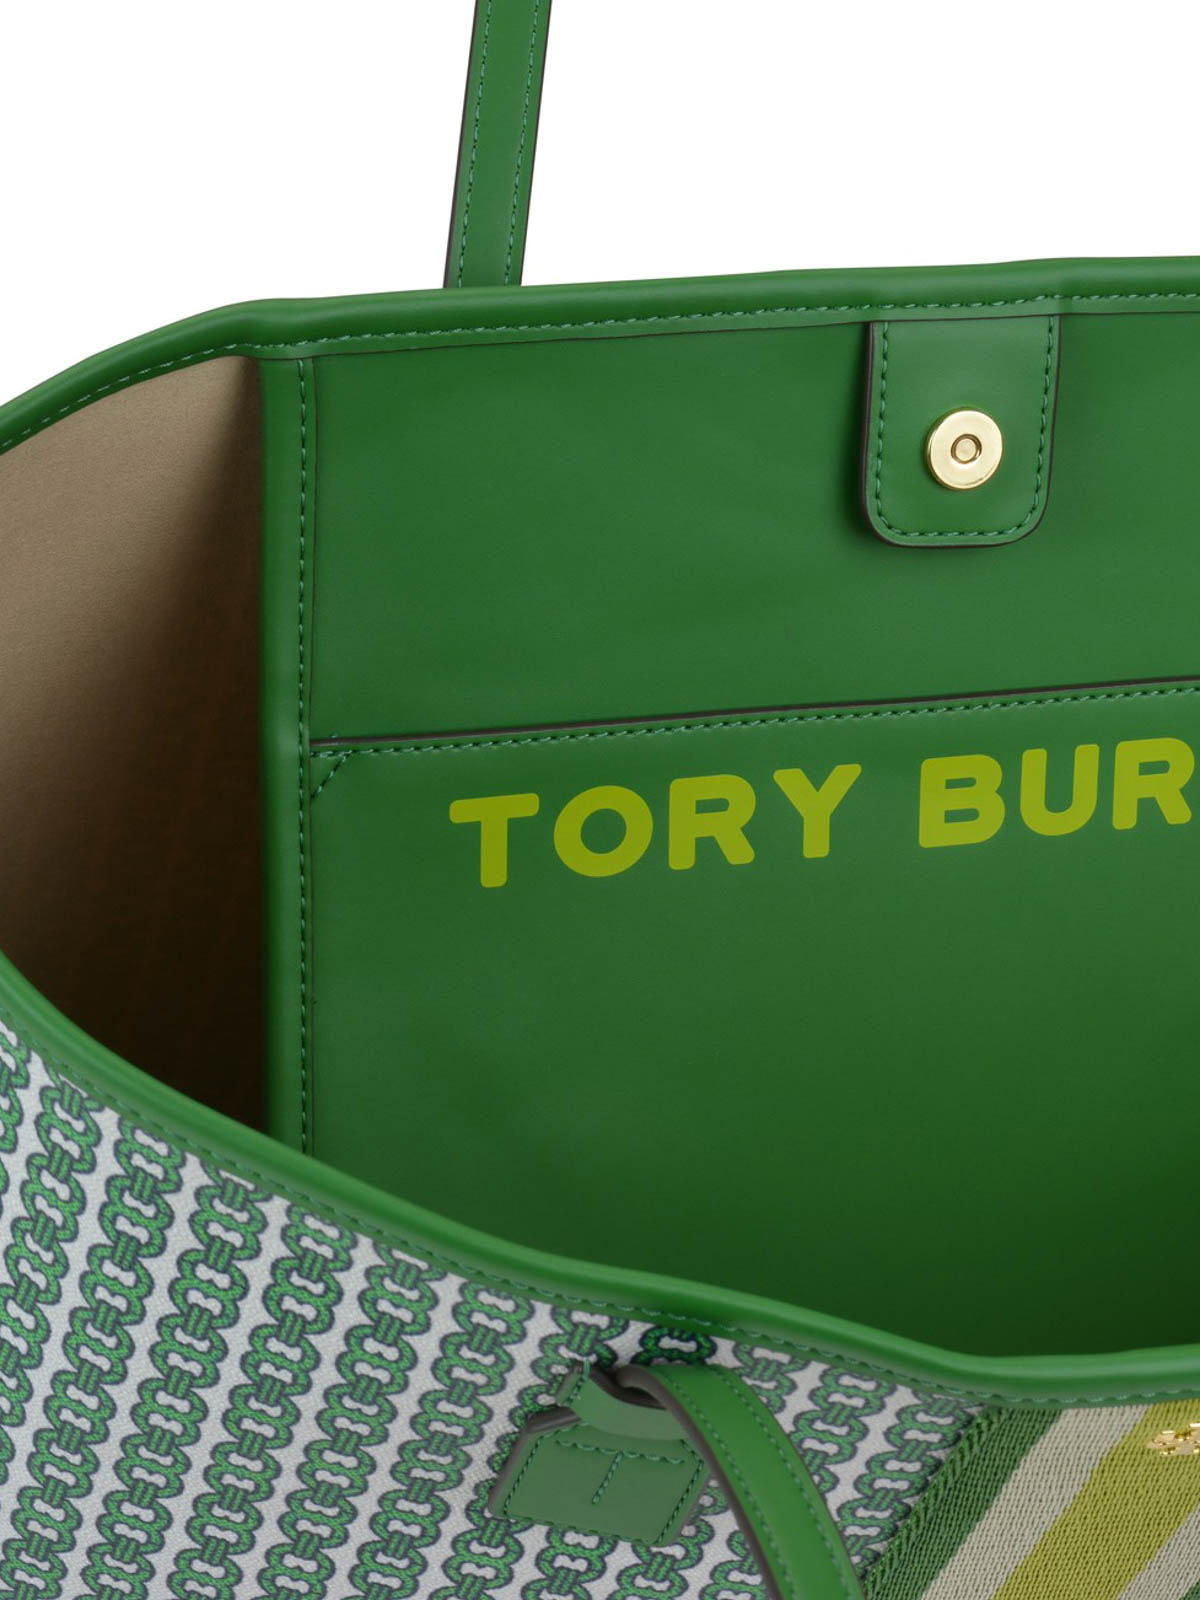 Tory Burch, Bags, Tory Burch Gemini Link Large Tote Bag